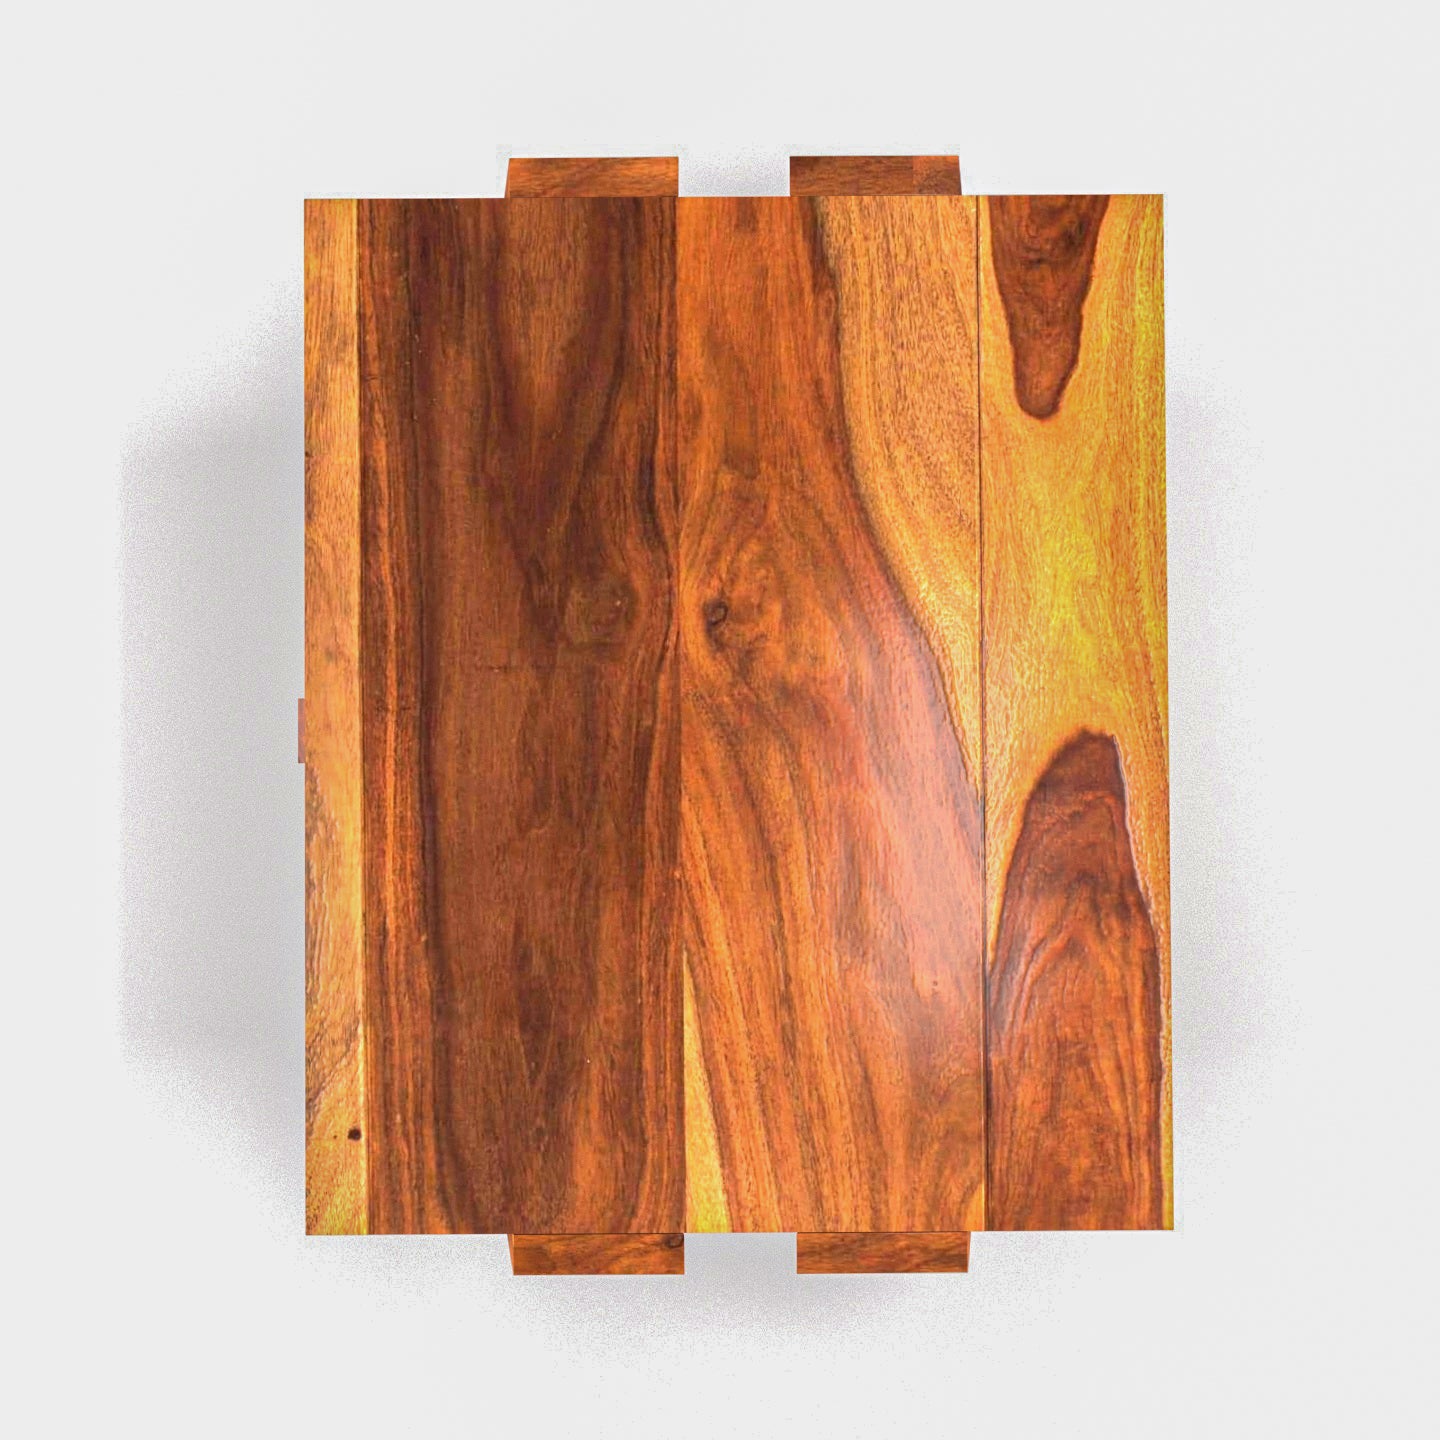 Stylish single drawer sheesham wood bedside Bedside